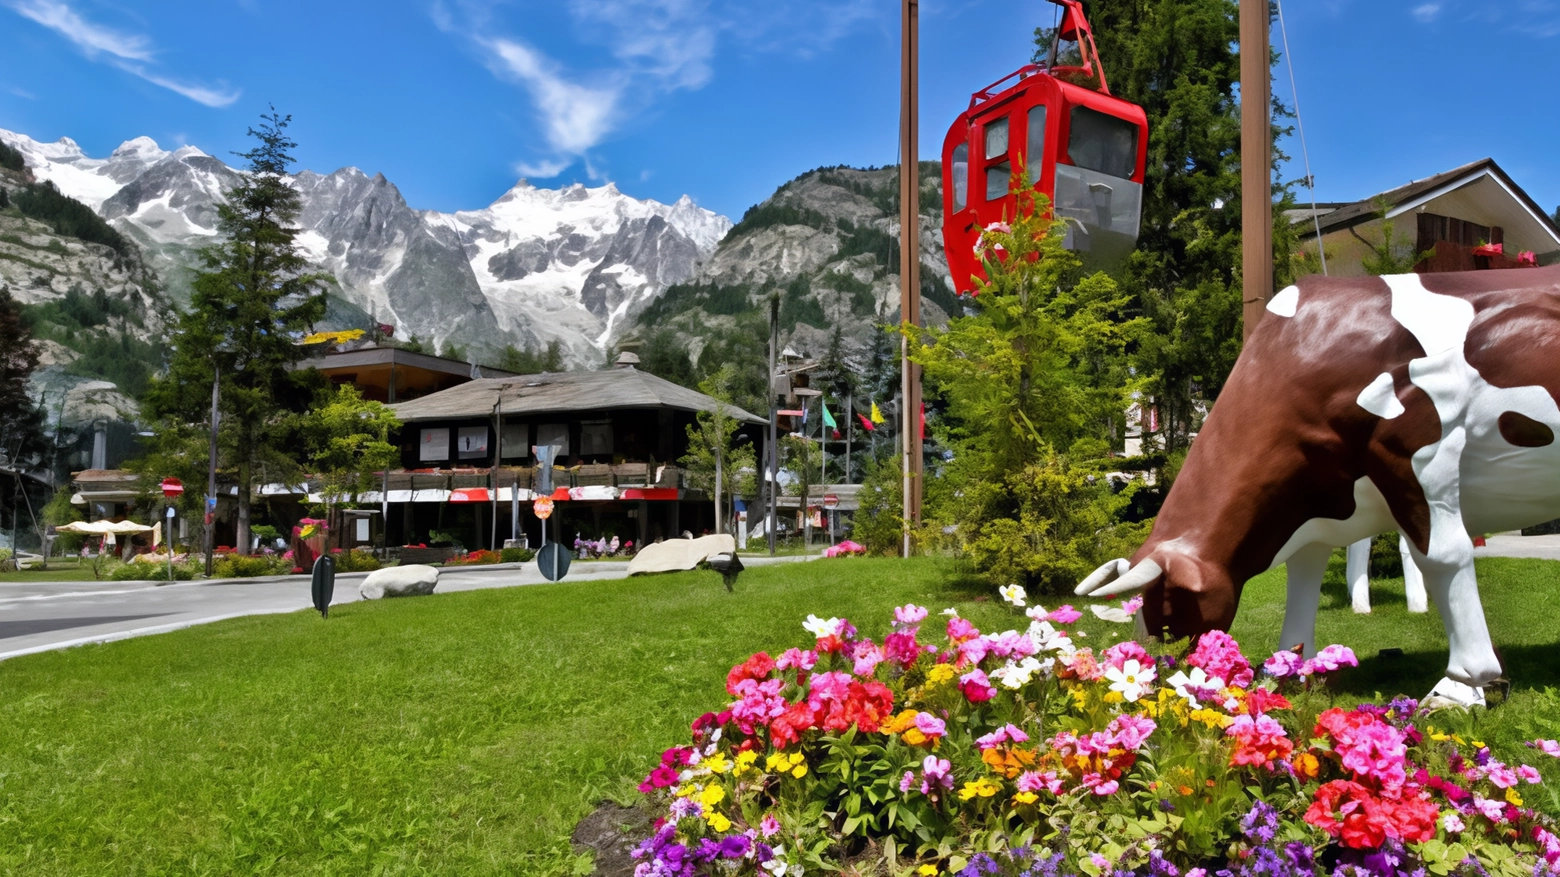 Escursioni, pedalate nel verde e buona cucina: nella cittadina ai piedi del Monte Bianco un ventaglio di proposte per l’estate